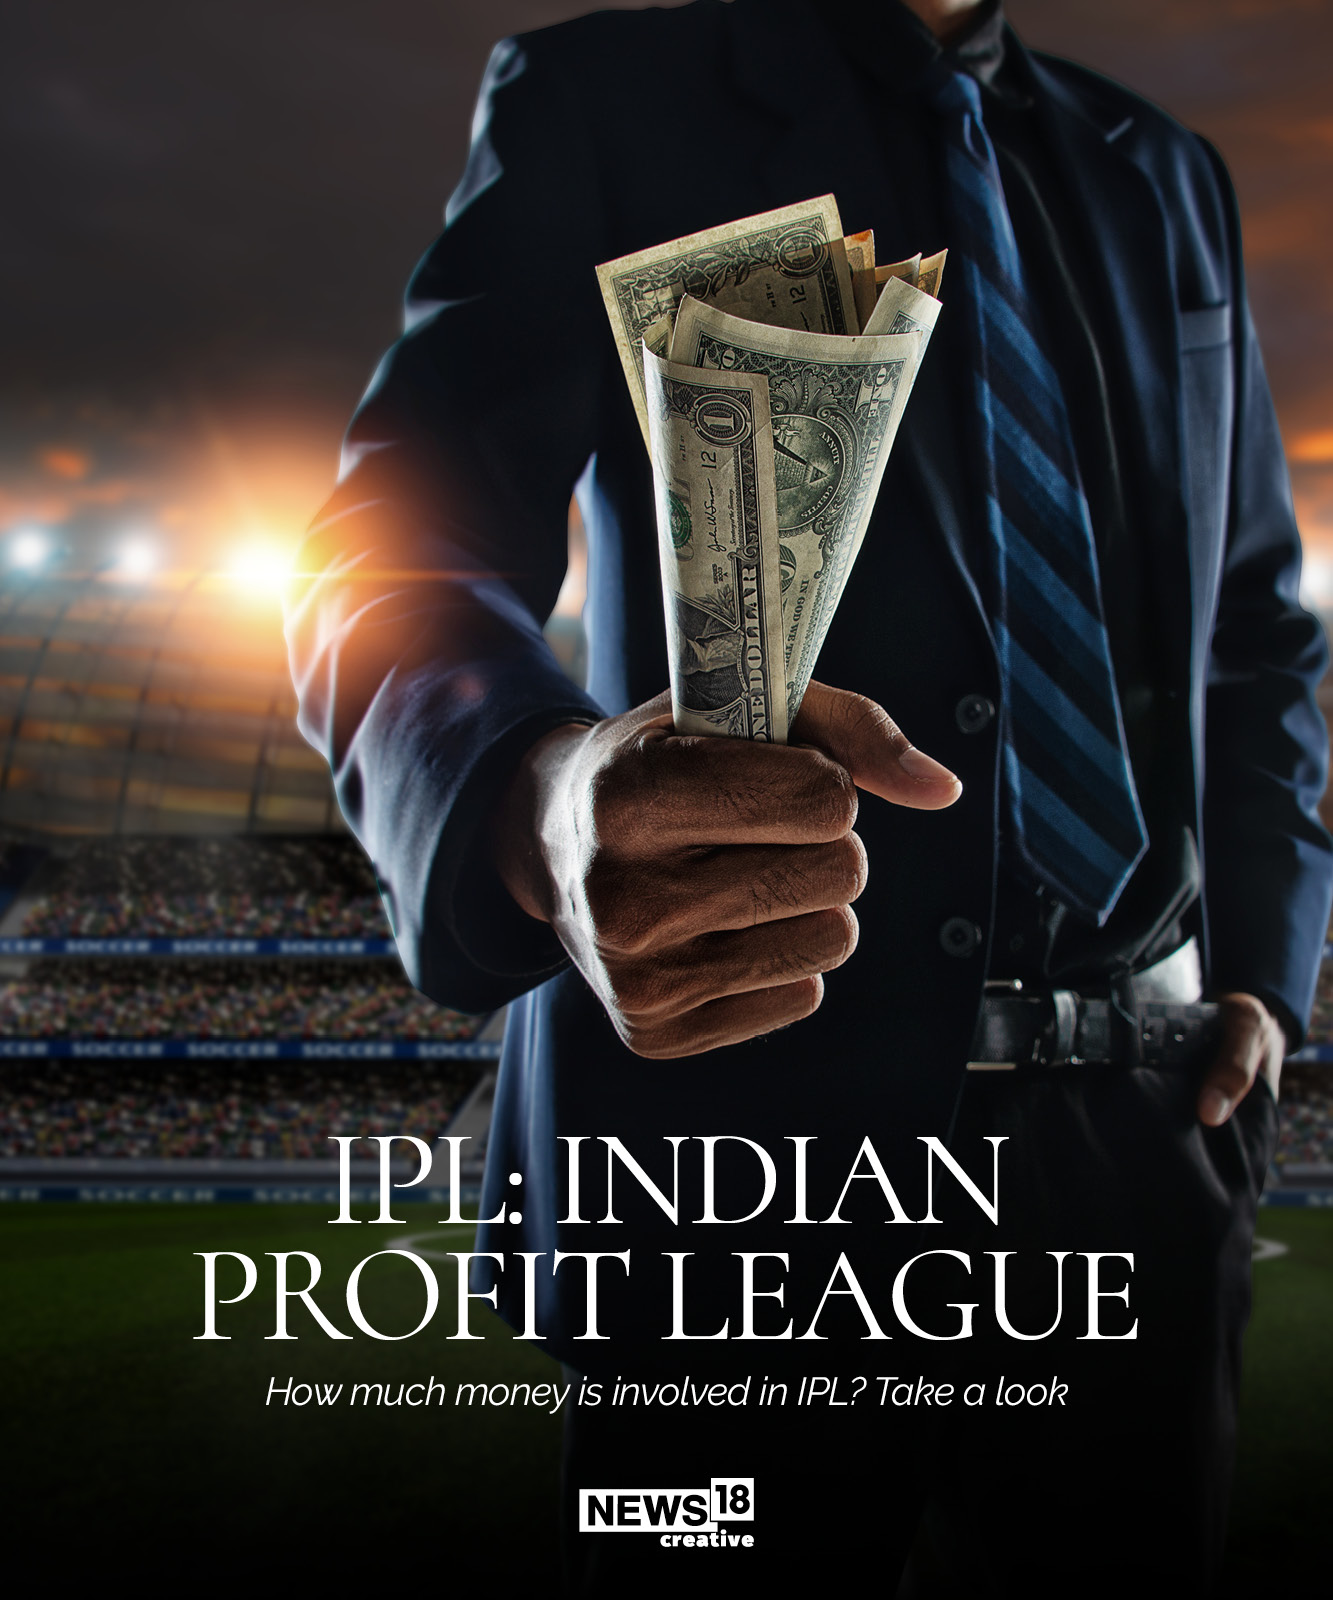 IPL: Indian Profit League?